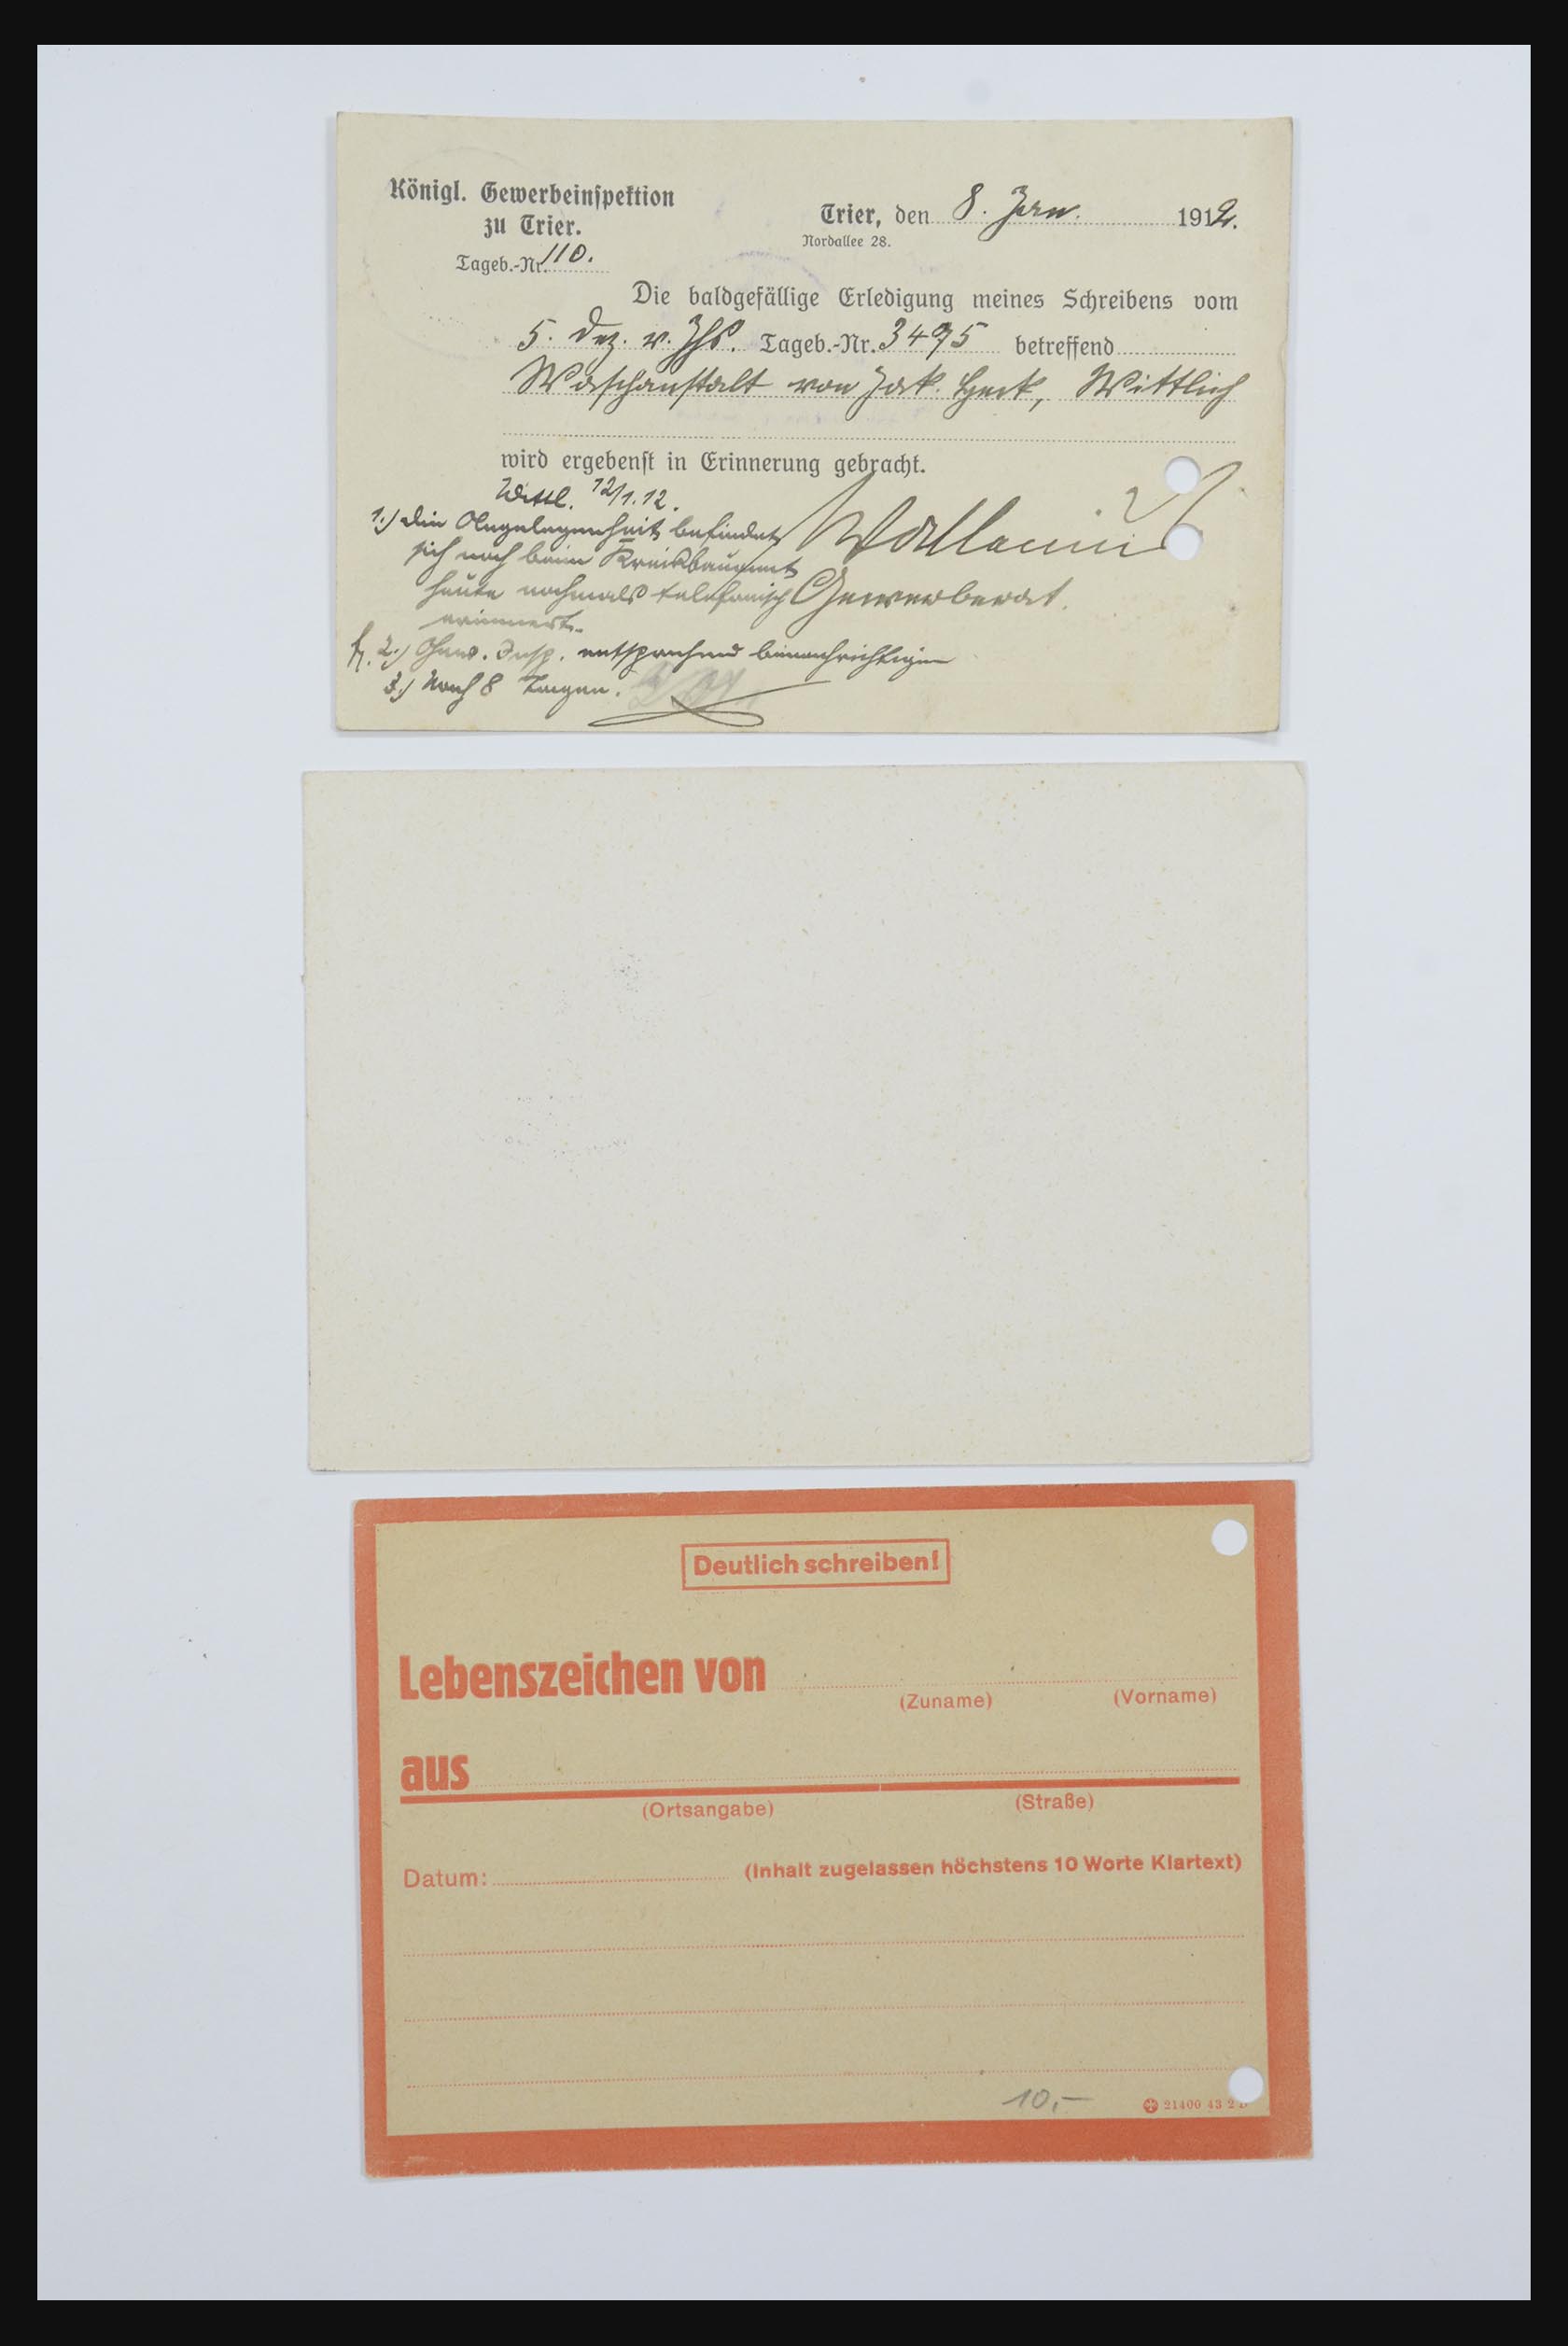 31952 089 - 31952 German Reich cards.